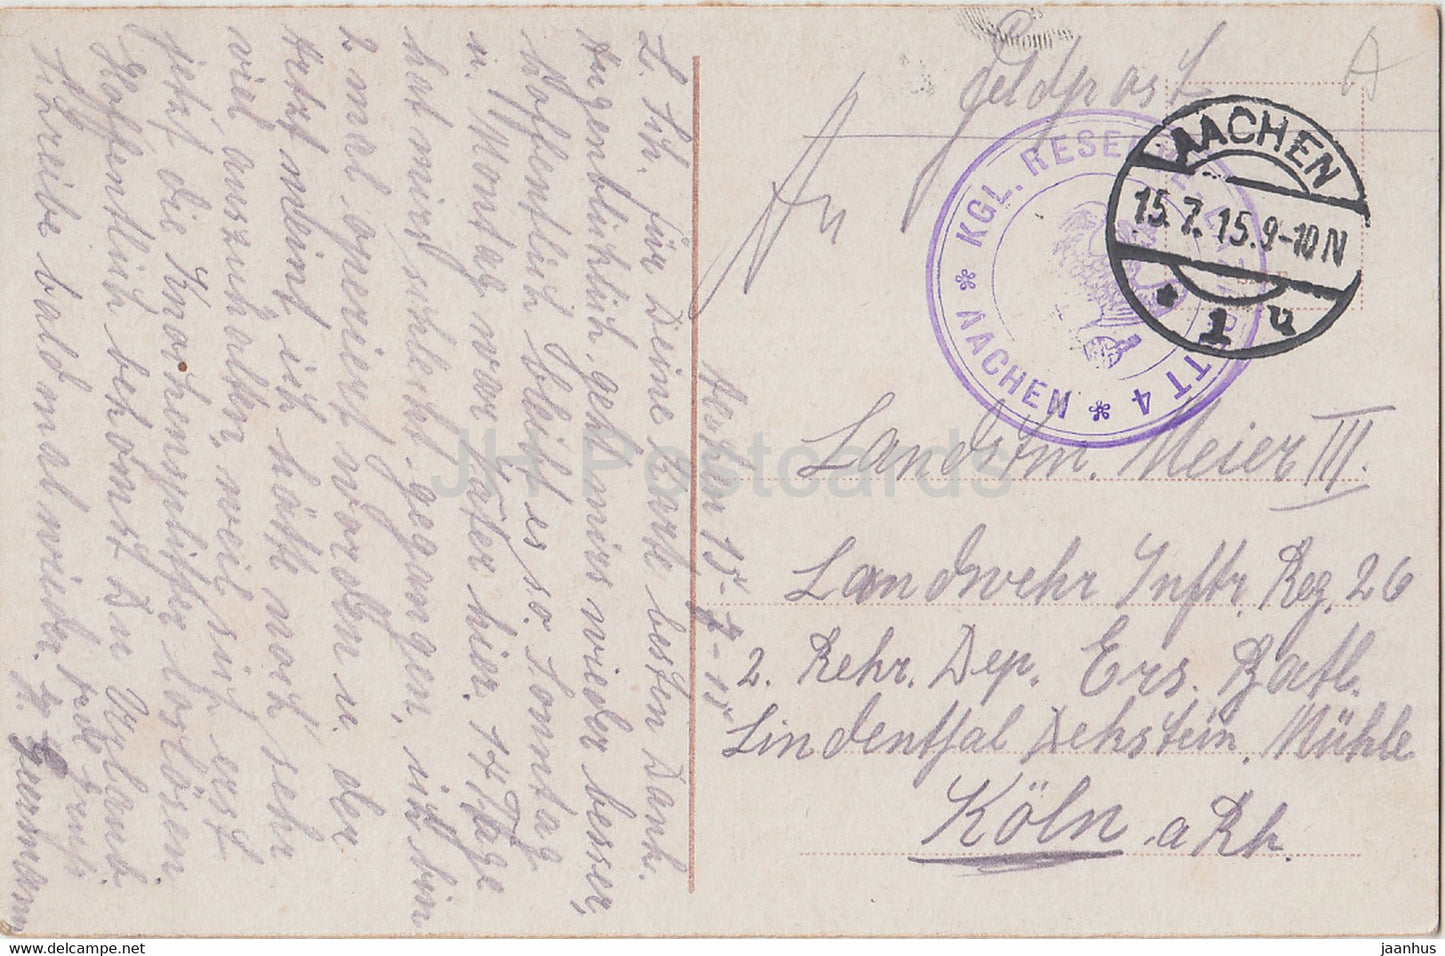 Aix-la-Chapelle - Feldpost - carte postale ancienne - 1915 - Allemagne - utilisé